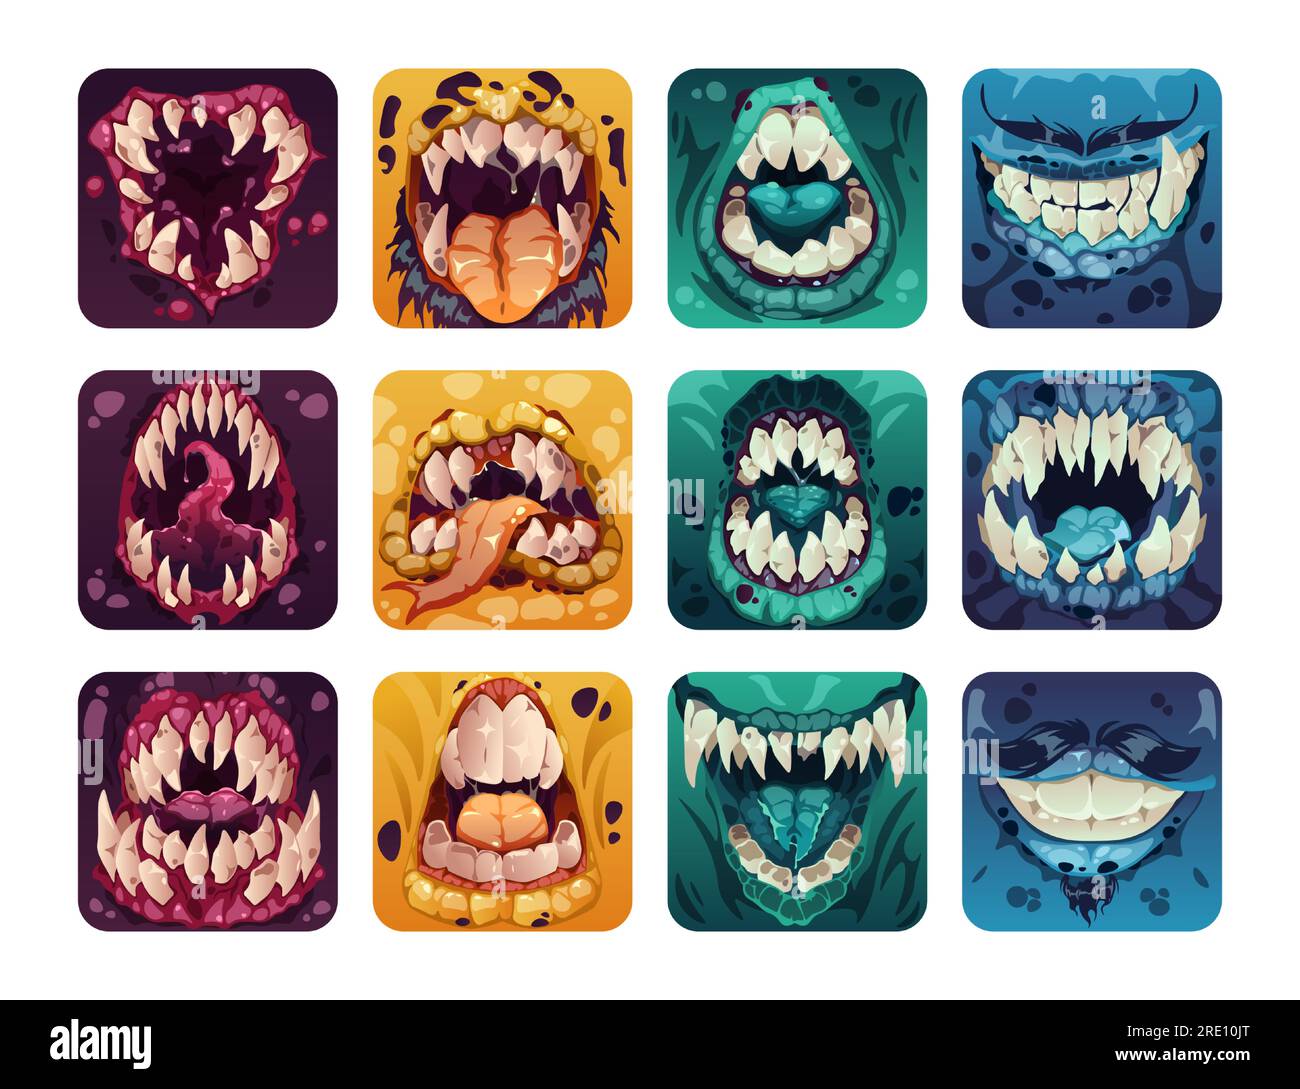 Logo für gruseligen Mund. Gruselige, farbenfrohe Monsterzähne im Cartoon-Stil, komische Horror-Alien-Zombie-Lächelzunge für GUI-Elemente im Spieldesign. Vektor-Fantasie-Set Stock Vektor